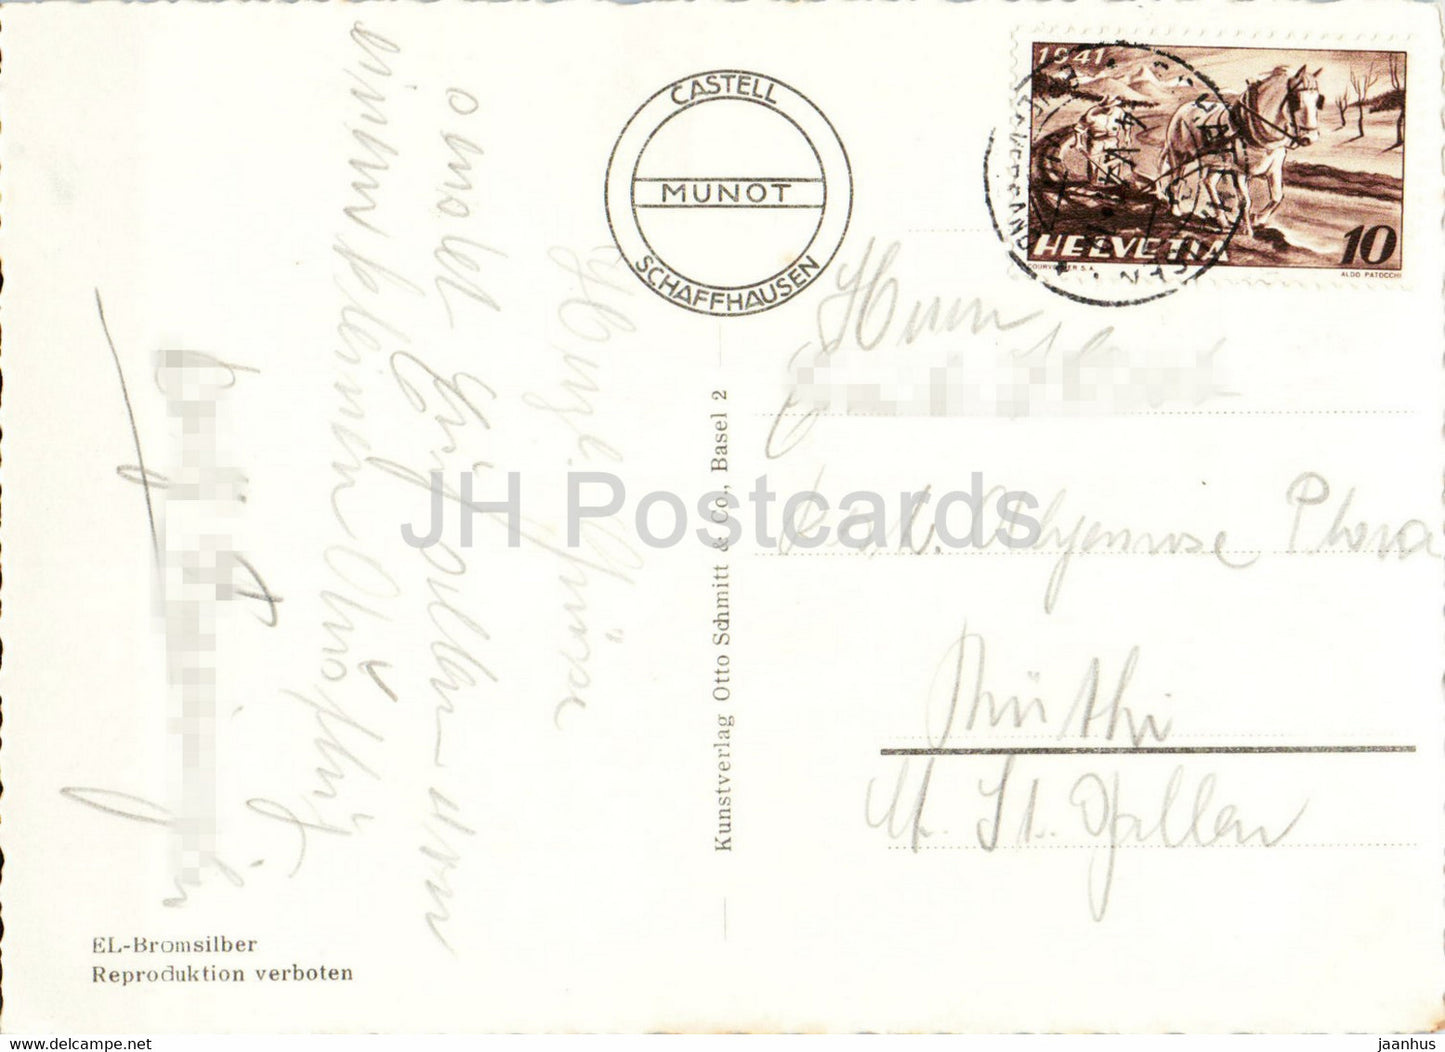 Schaffhausen - Munot - 1941 - alte Postkarte - Schweiz - gebraucht